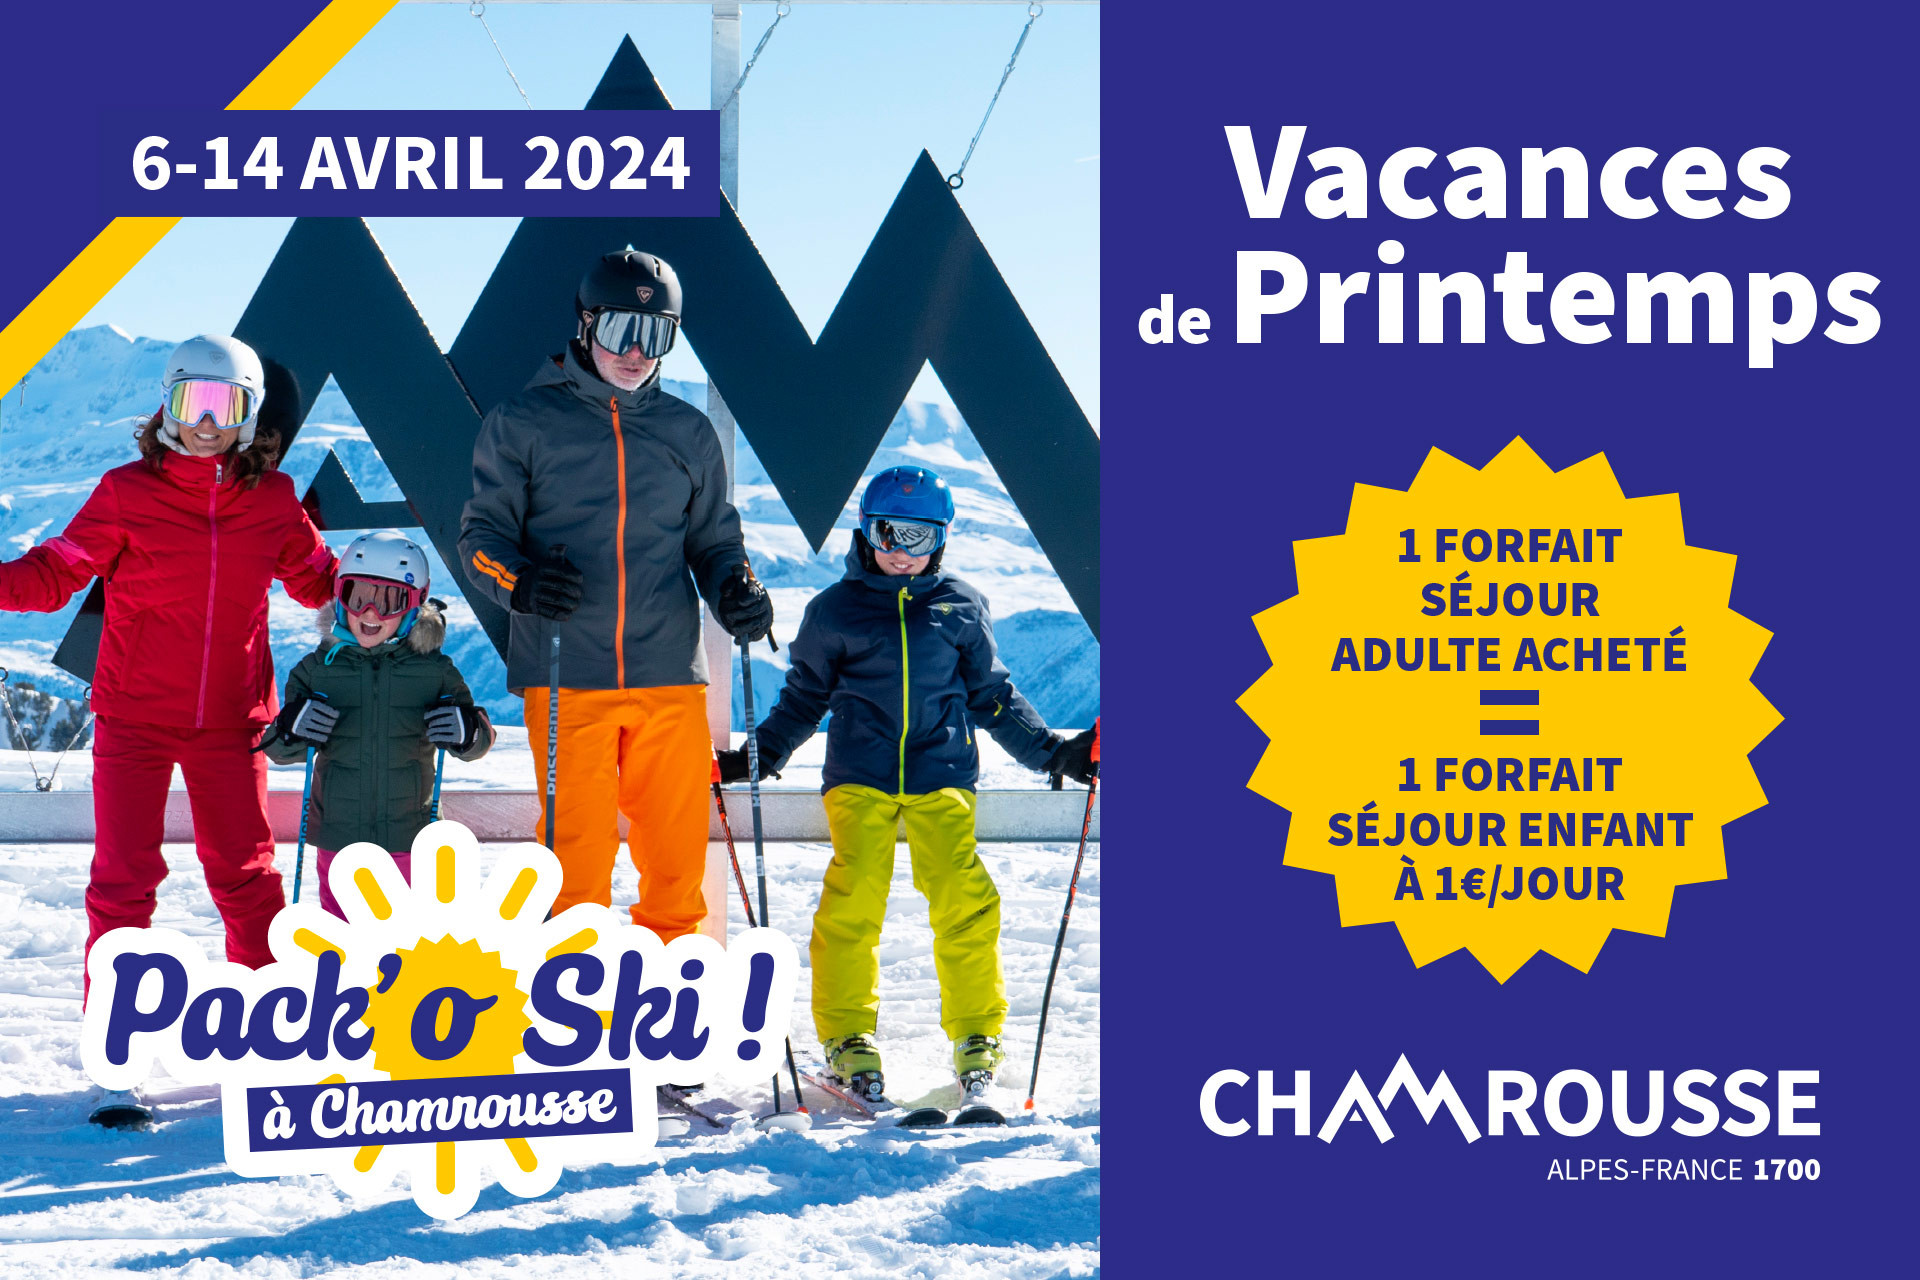  Chamrousse pack'o ski angebot frühlingsferien familie bergferienort grenoble isere französische alpen frankreich